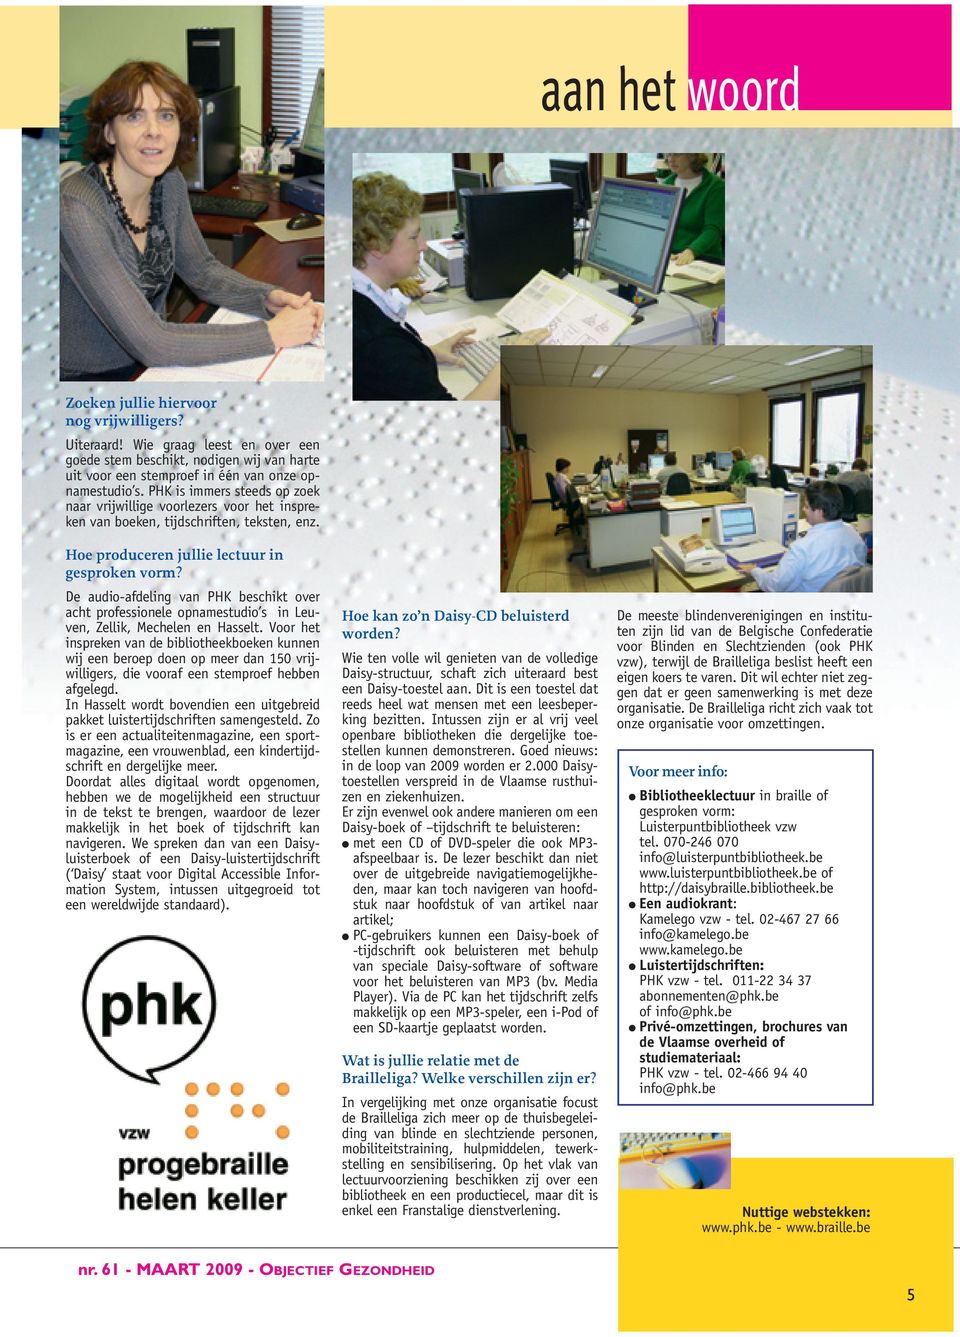 De audio-afdeling van PHK beschikt over acht professionele opnamestudio s in Leuven, Zellik, Mechelen en Hasselt.